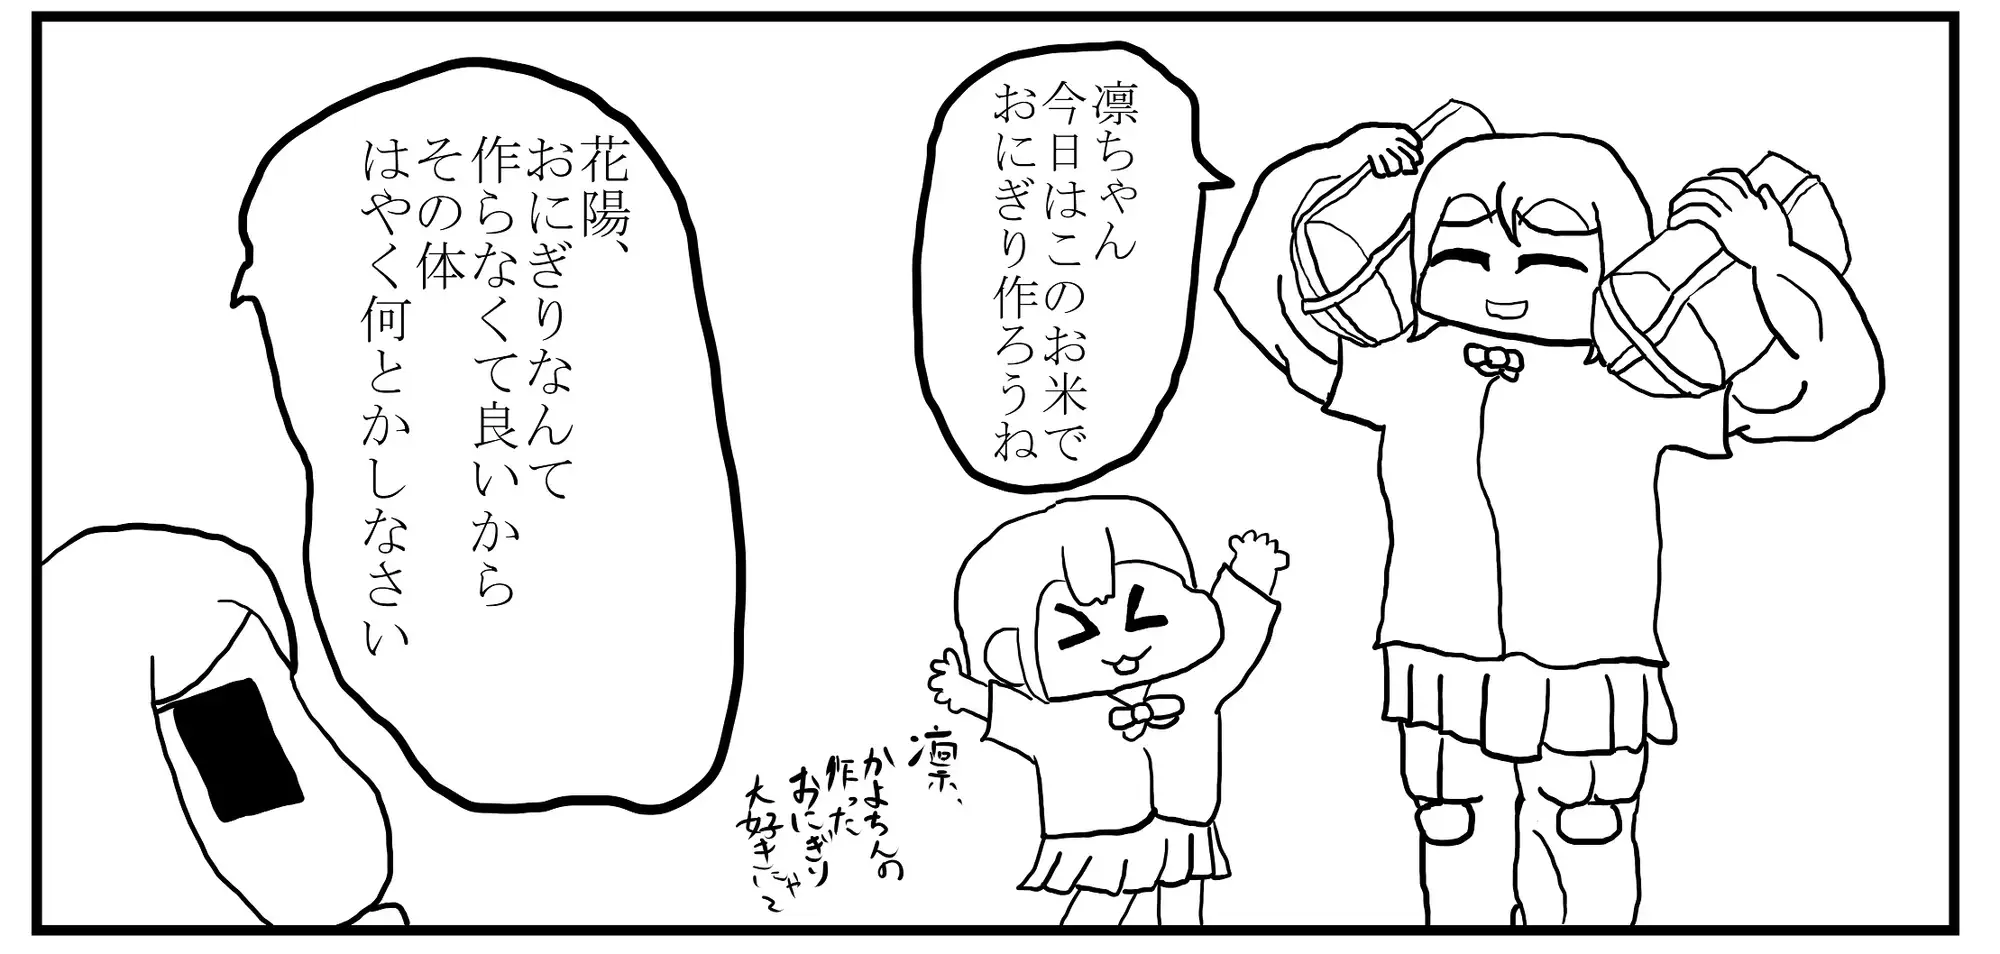 [ゆるふわ研究所]ラ○ライブ!3コマ漫画「一年生組 〜筋肉かよちんver.〜」